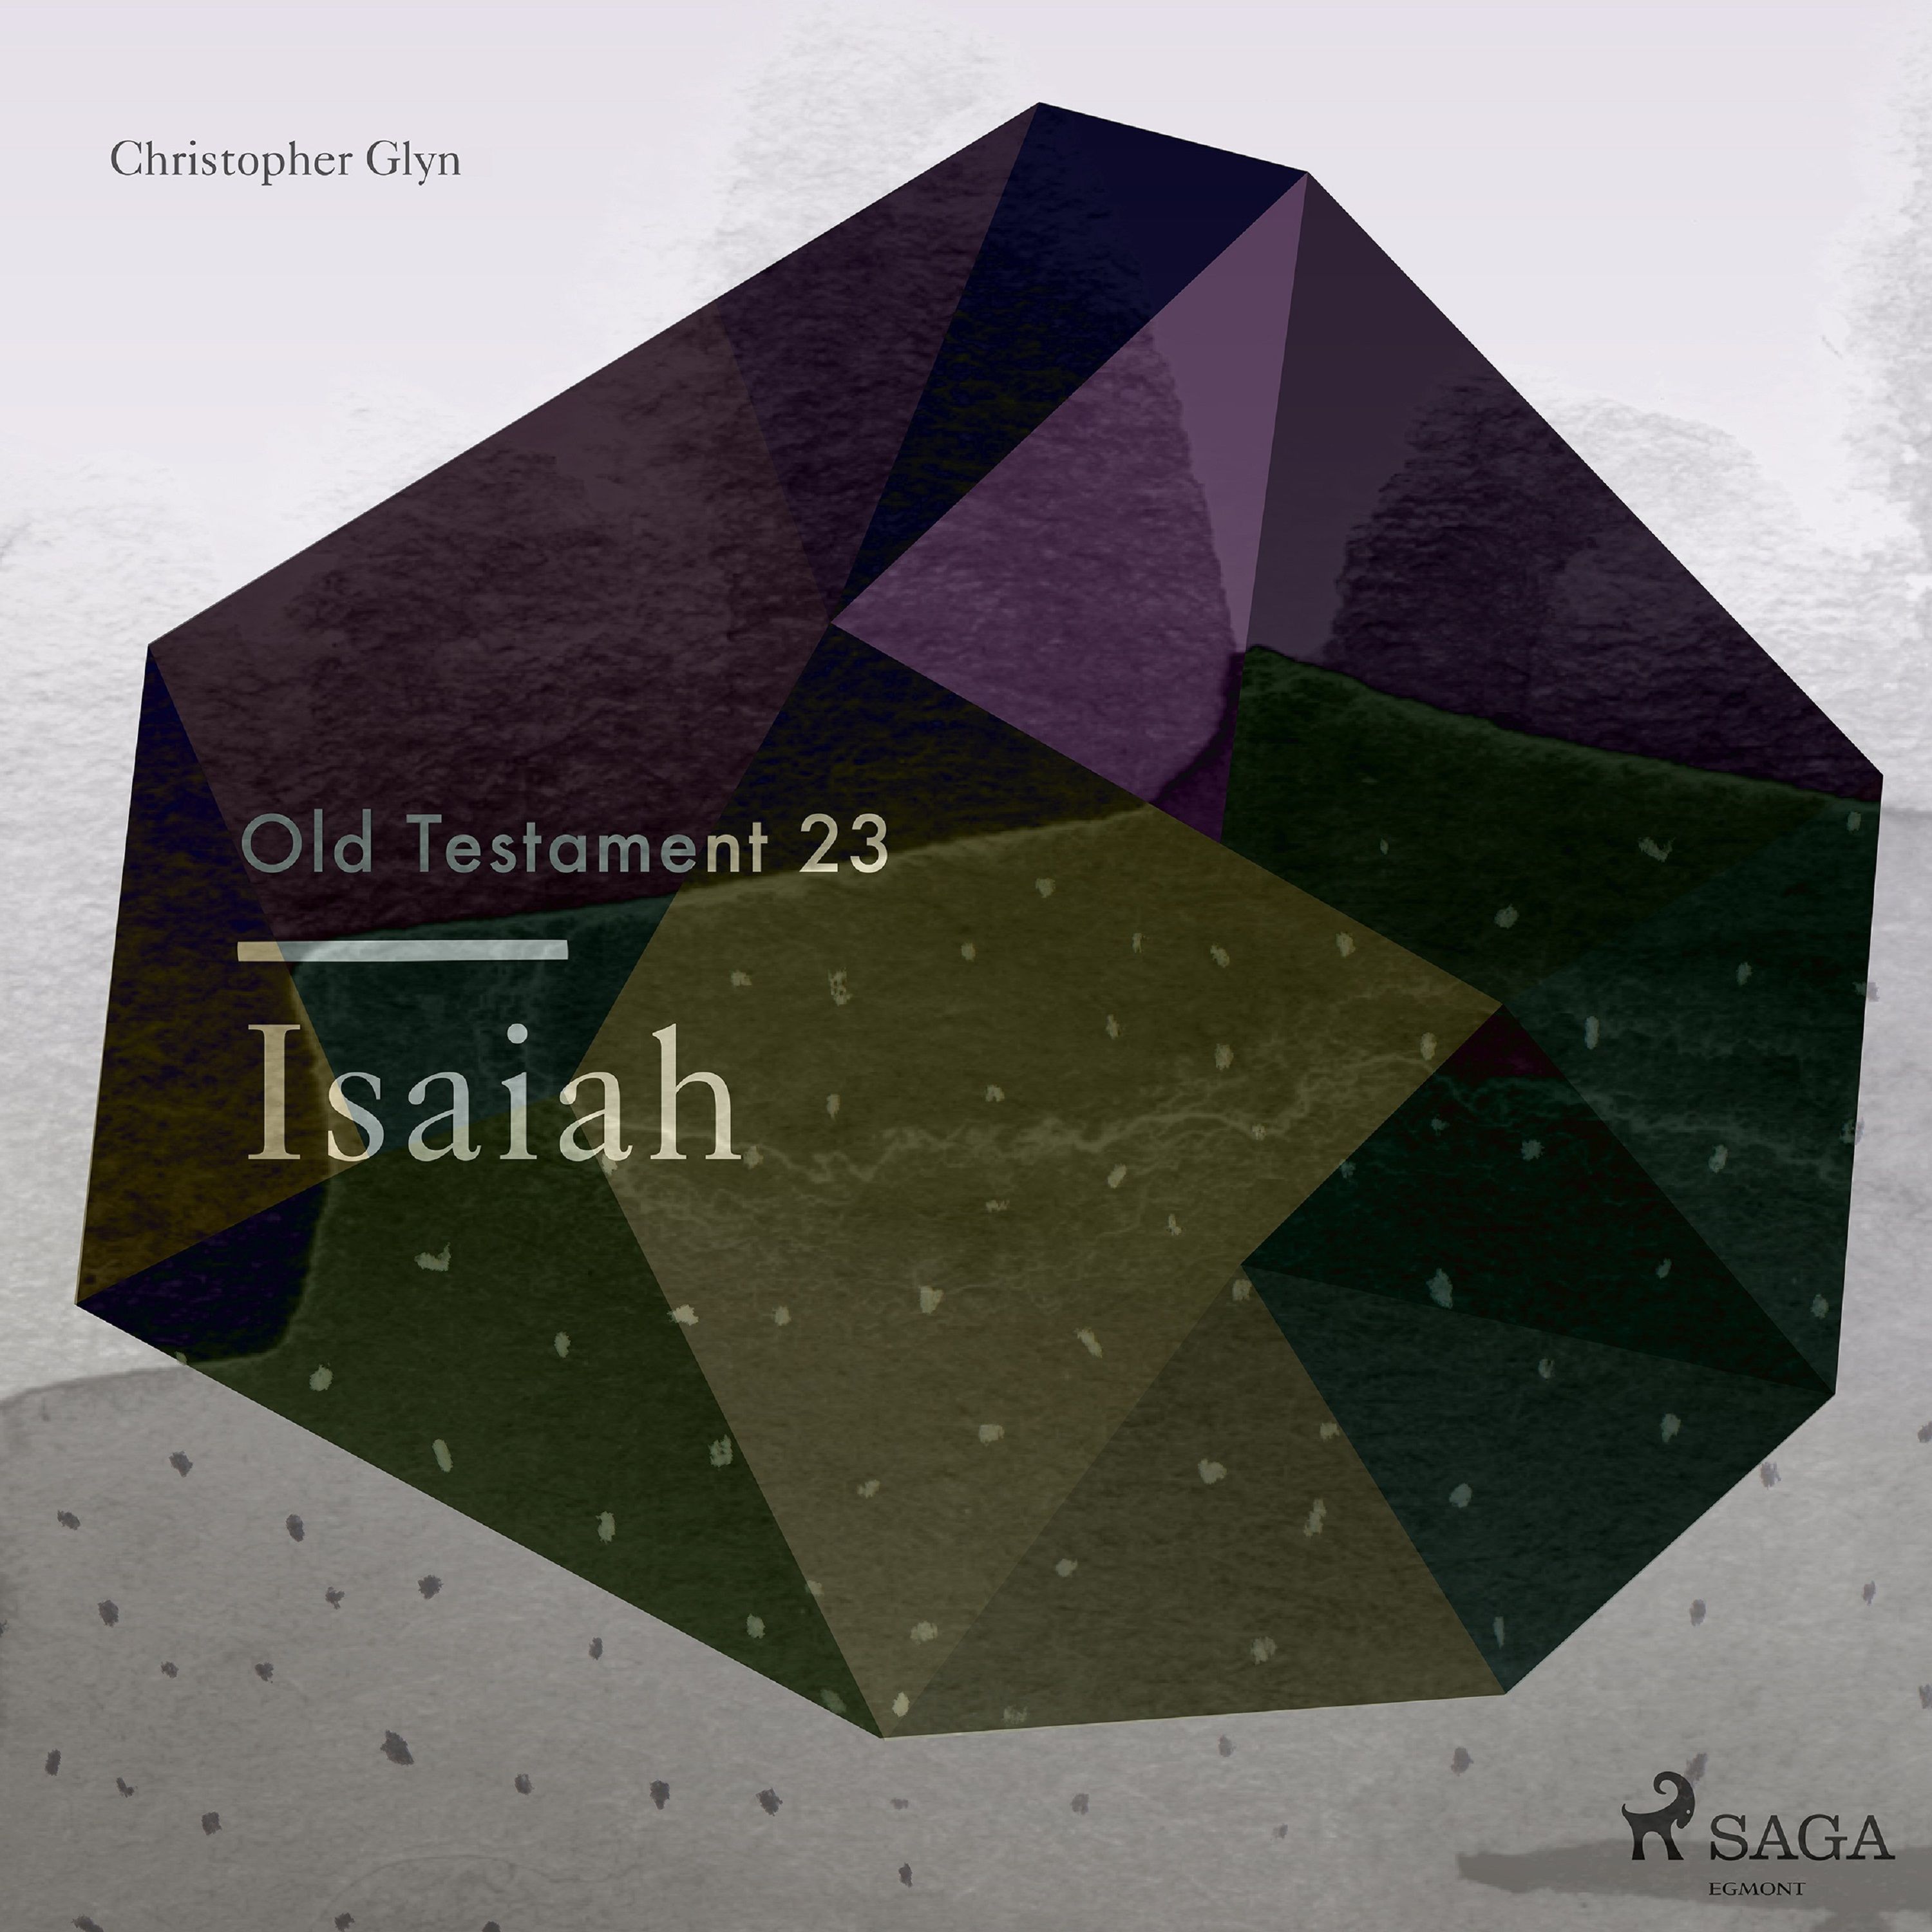 The Old Testament 23 - Isaiah, ljudbok av Christopher Glyn